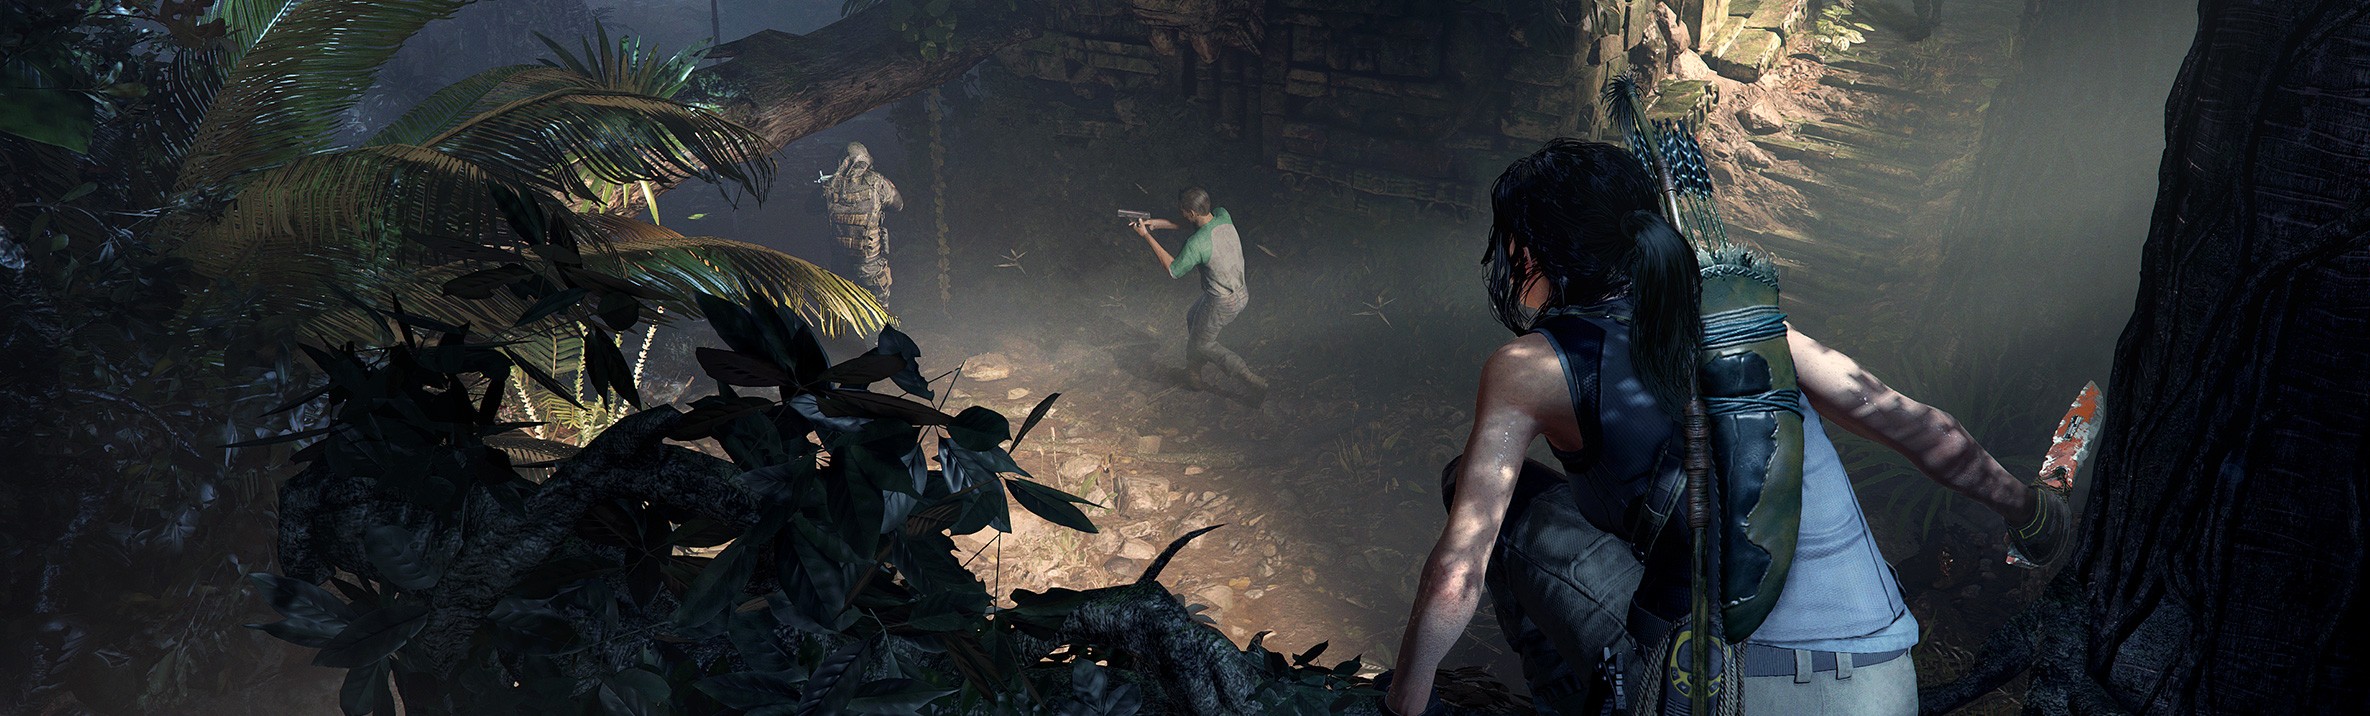 Игры 2018 системные требования. Shadow of the Tomb Raider требования. Lara Croft Shadow of the Tomb Raider системные требования. Shadow of the Tomb Raider Definitive Edition системные требования. Системные требования шадоу оф томб Райдер.